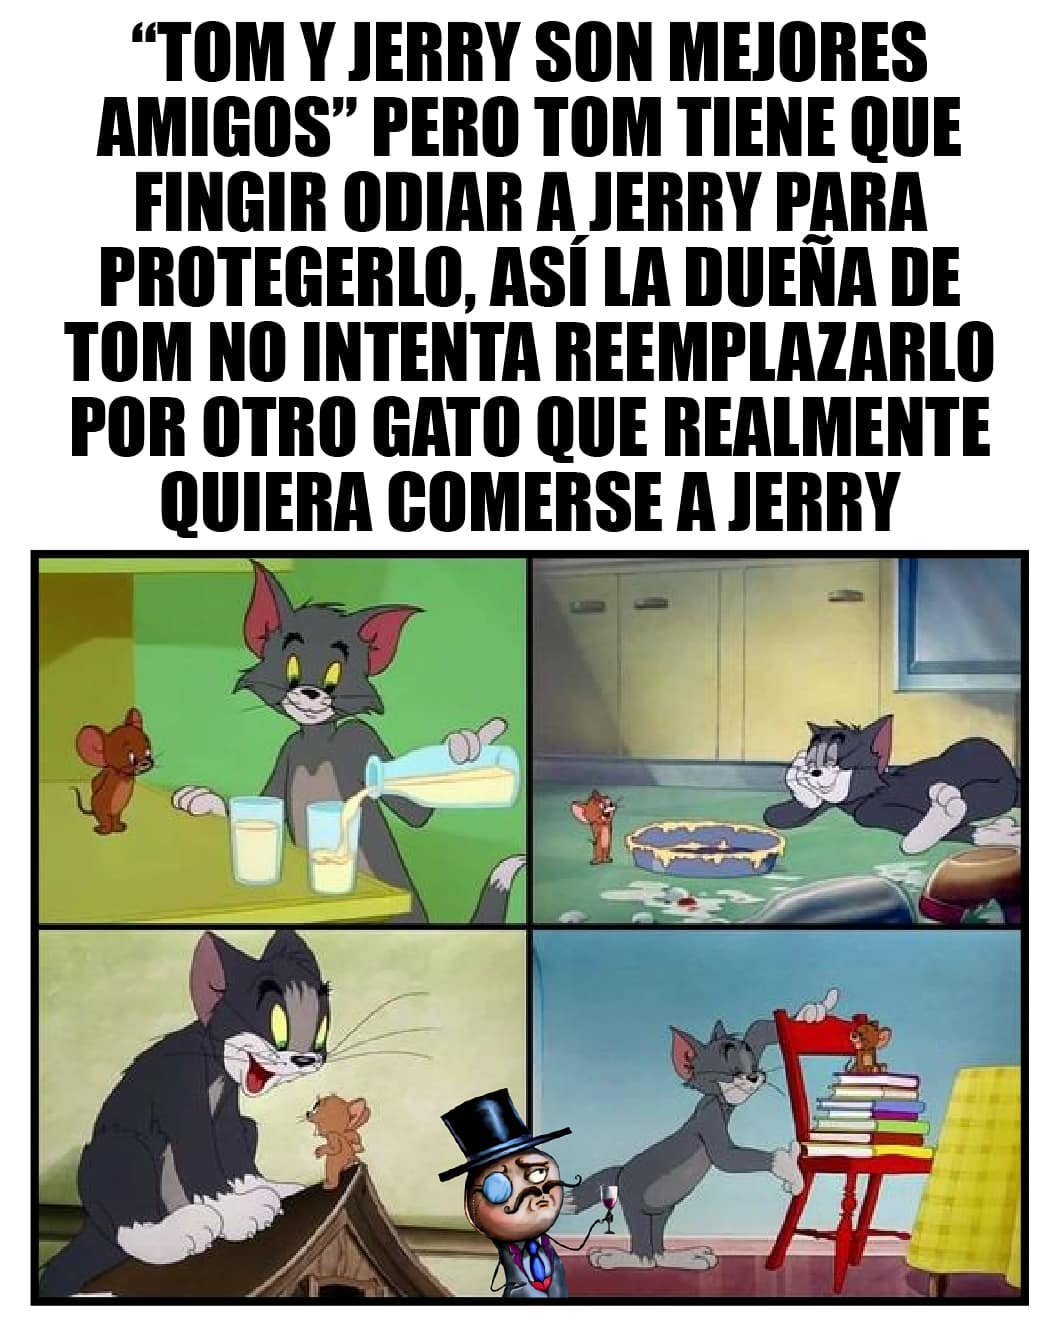 Tom y Jerry son mejores amigos, pero Tom tiene que fingir odiar a Jenrry para protegerlo, así la dueña de Tom no intenta reemplazarlo por otro gato que realmente quiera comerse a Jerry.